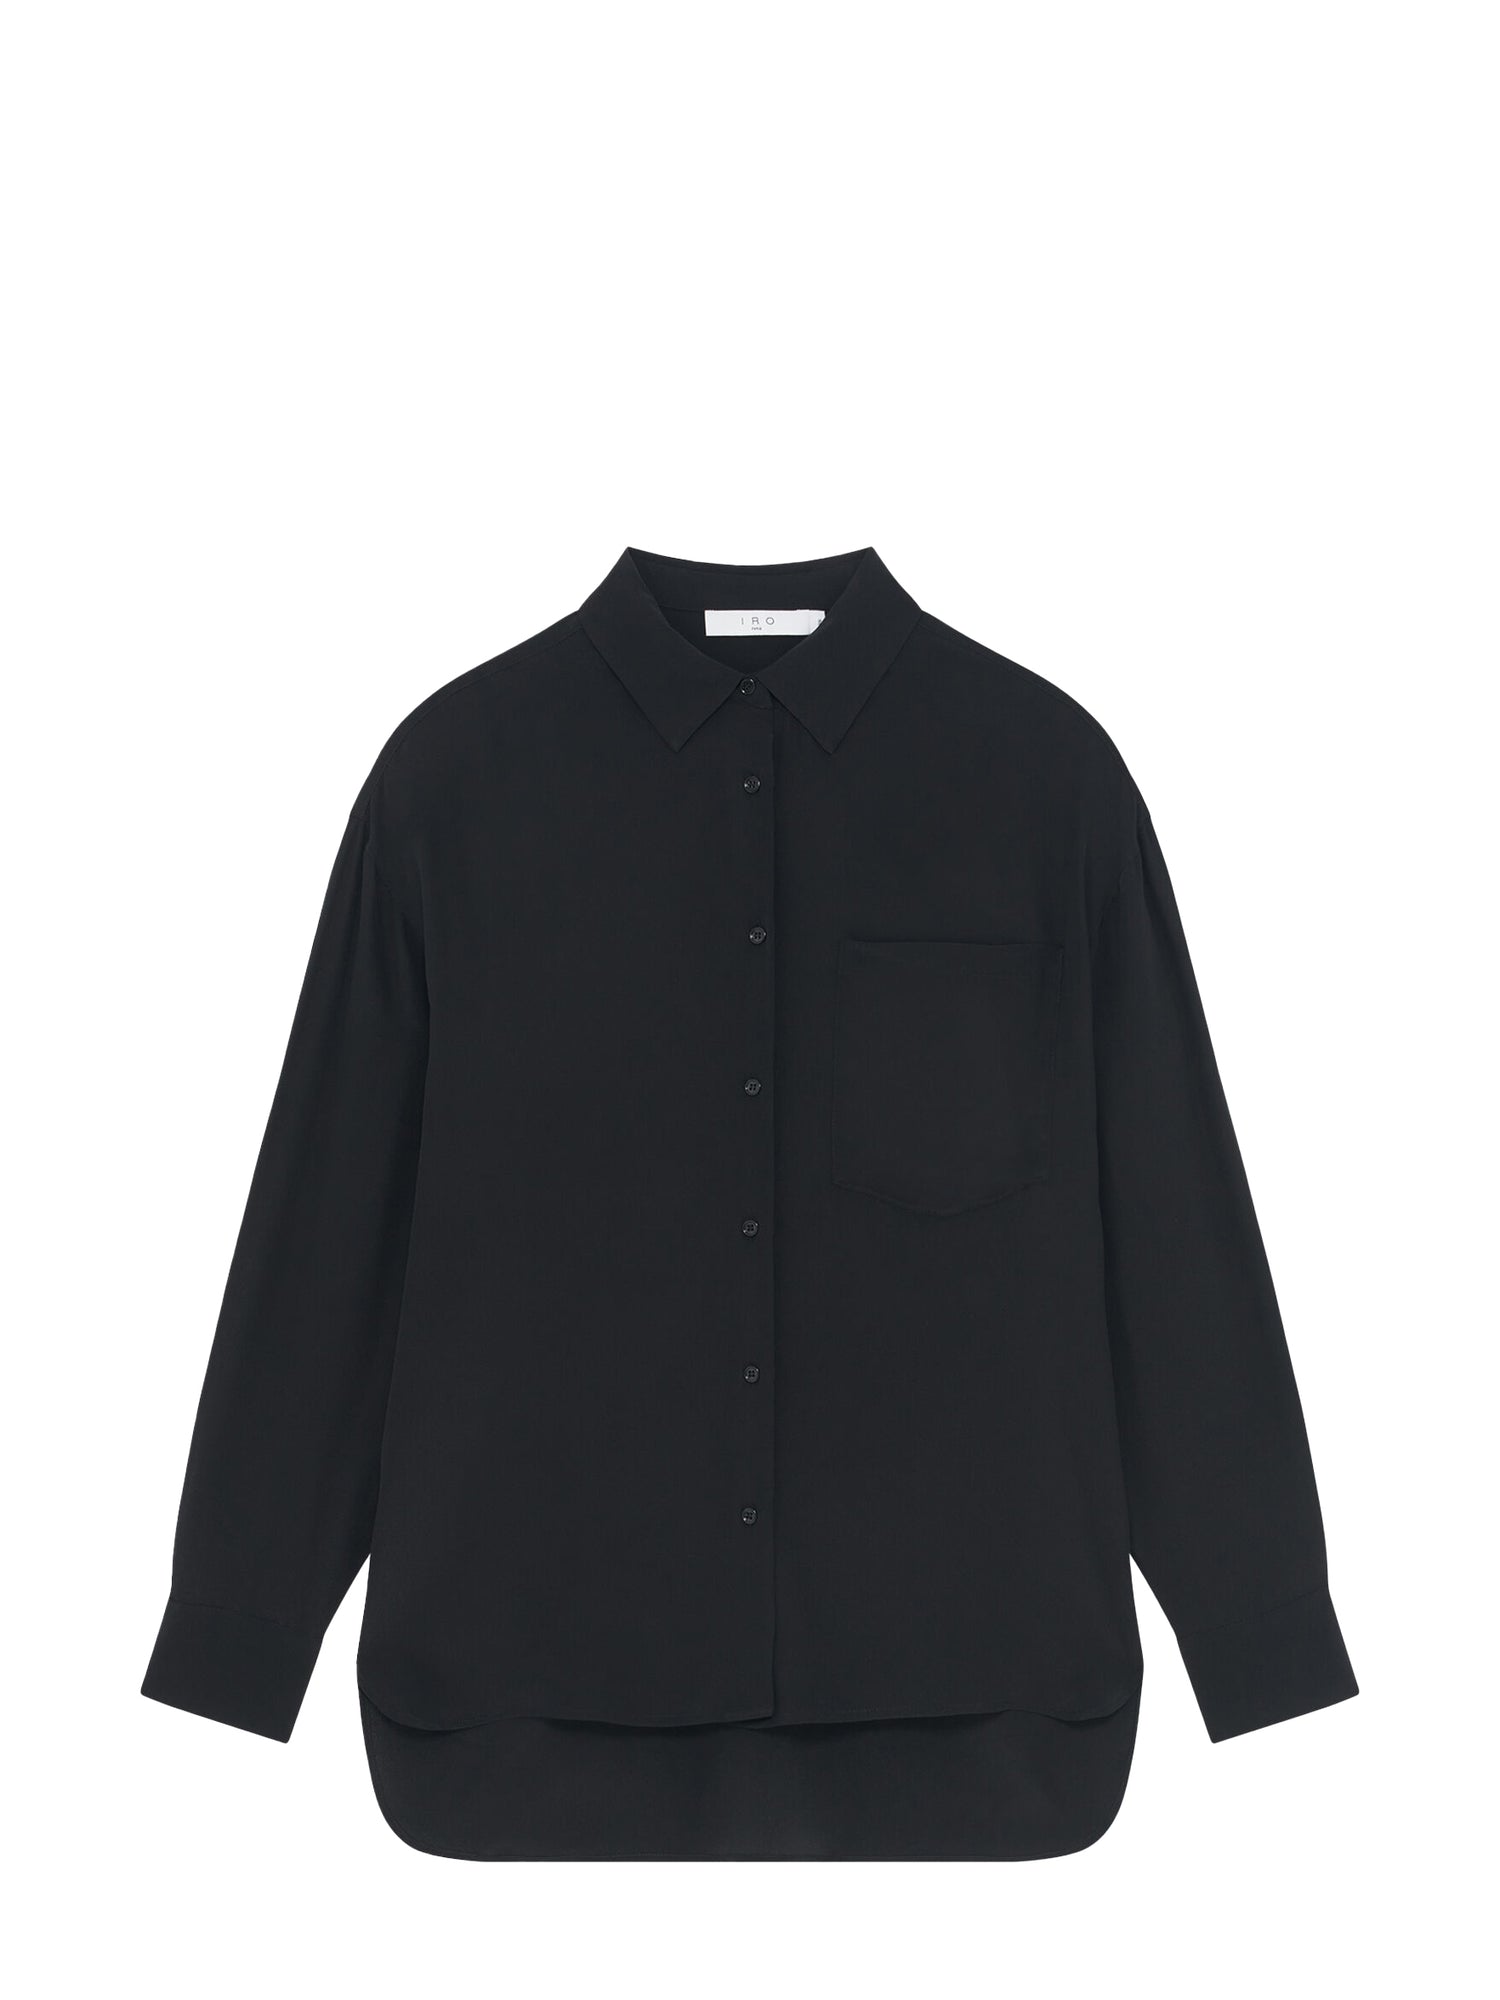 RYLEE silk blouse, black